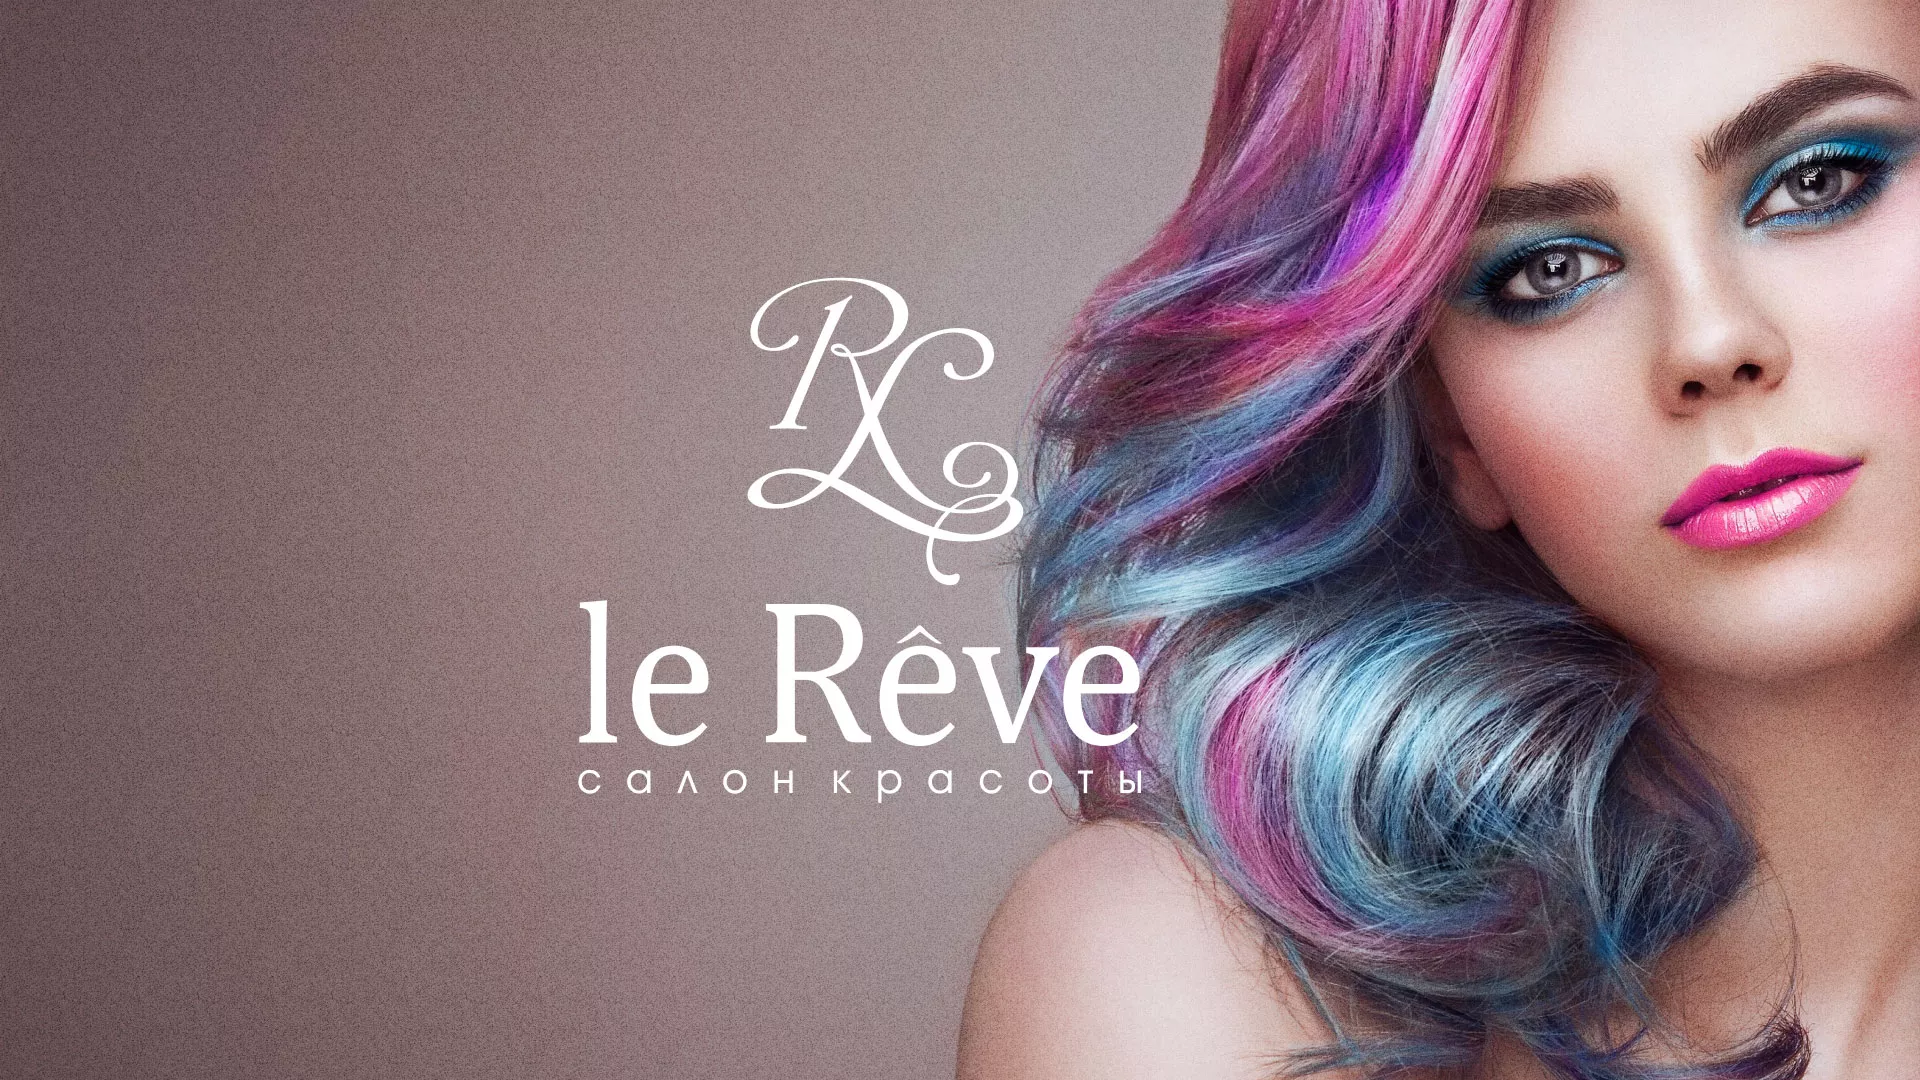 Создание сайта для салона красоты «Le Reve» в Оренбурге